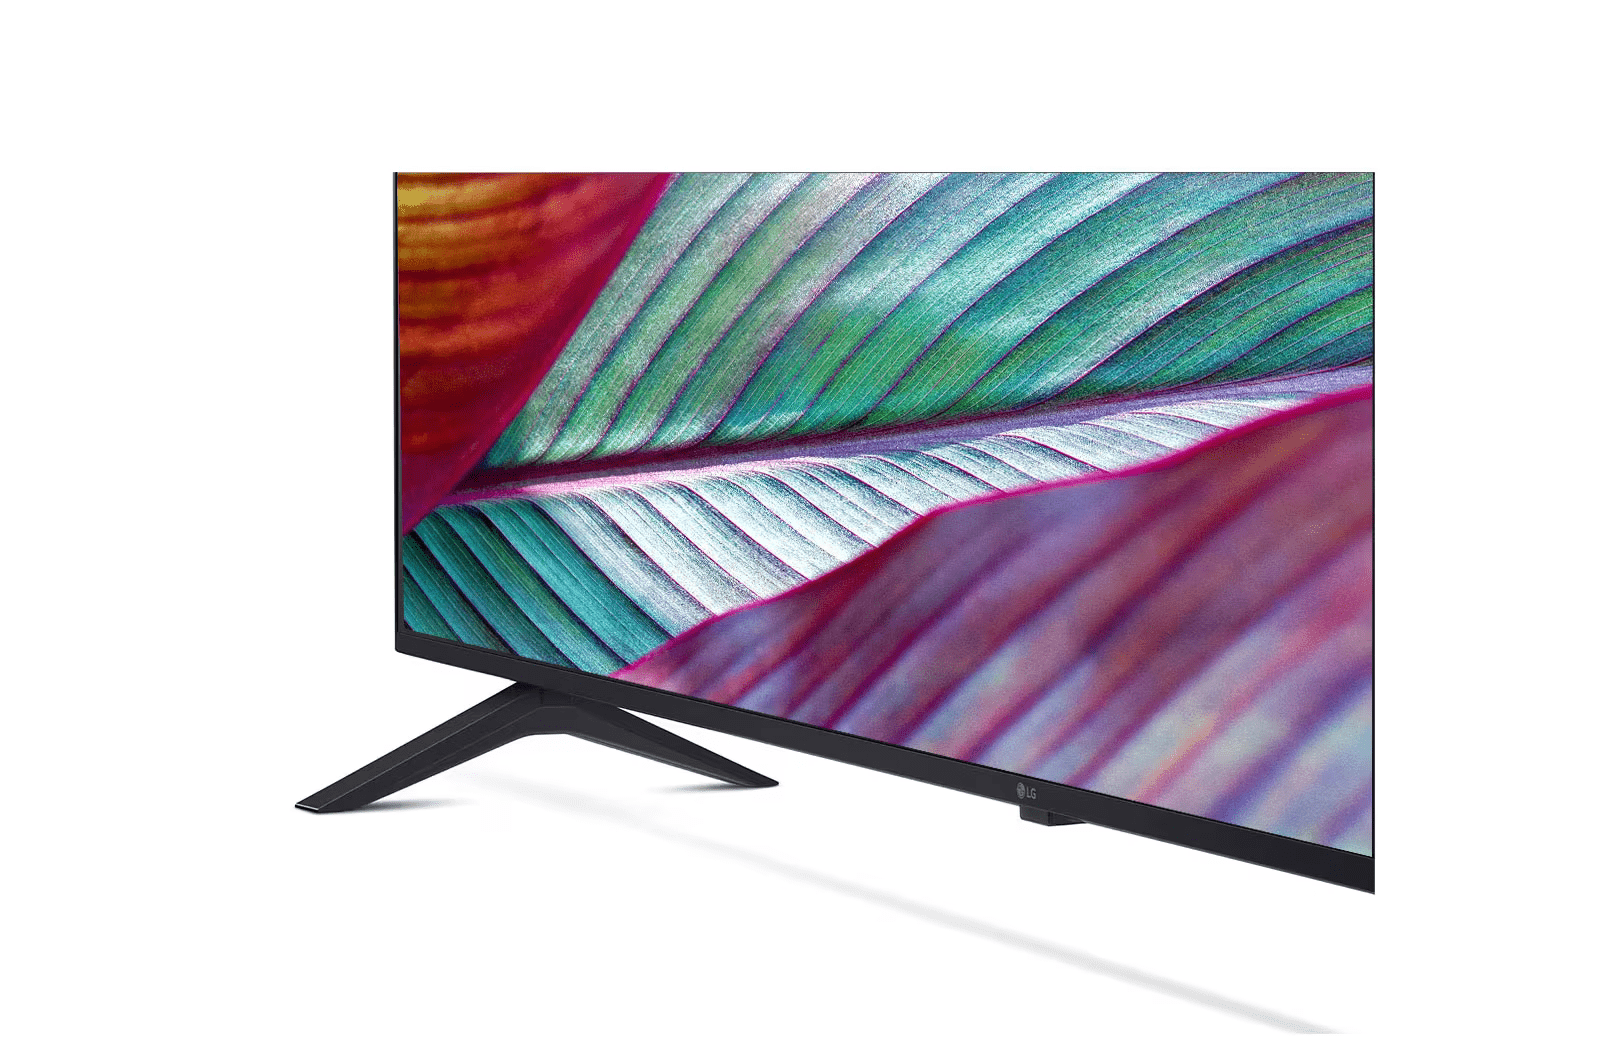 LG UHD TV UR75 55 (139cm) 4K Smart TV | WebOS | ThinQ AI | 4K Upscaling 55UR7550PSC - ATC Electronics